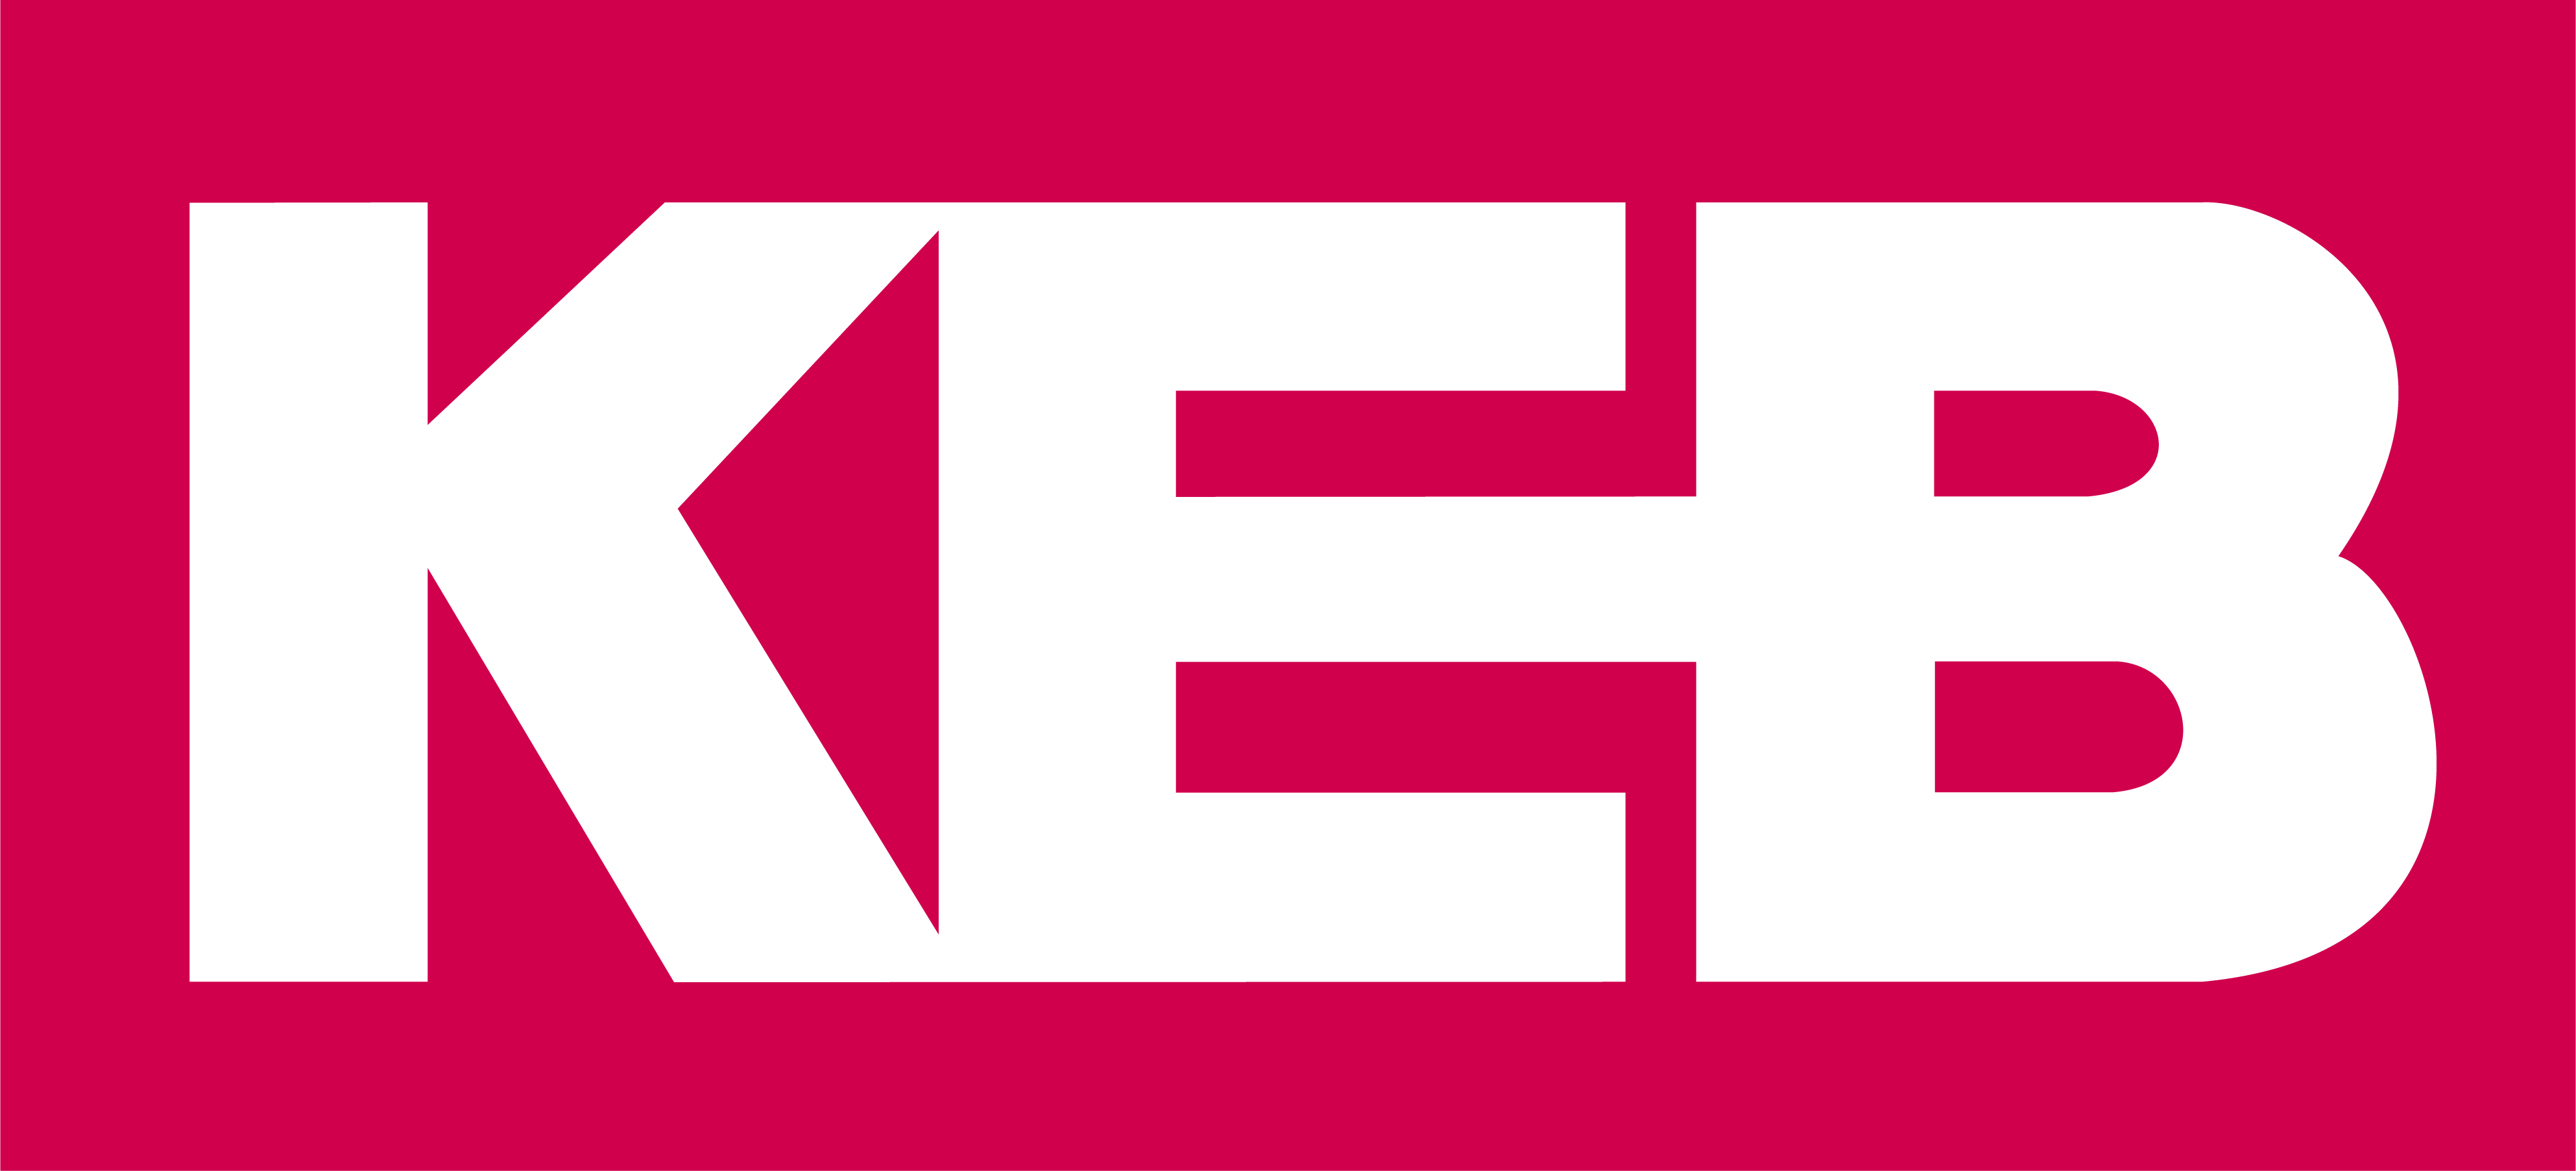 Keb自动化千克标志